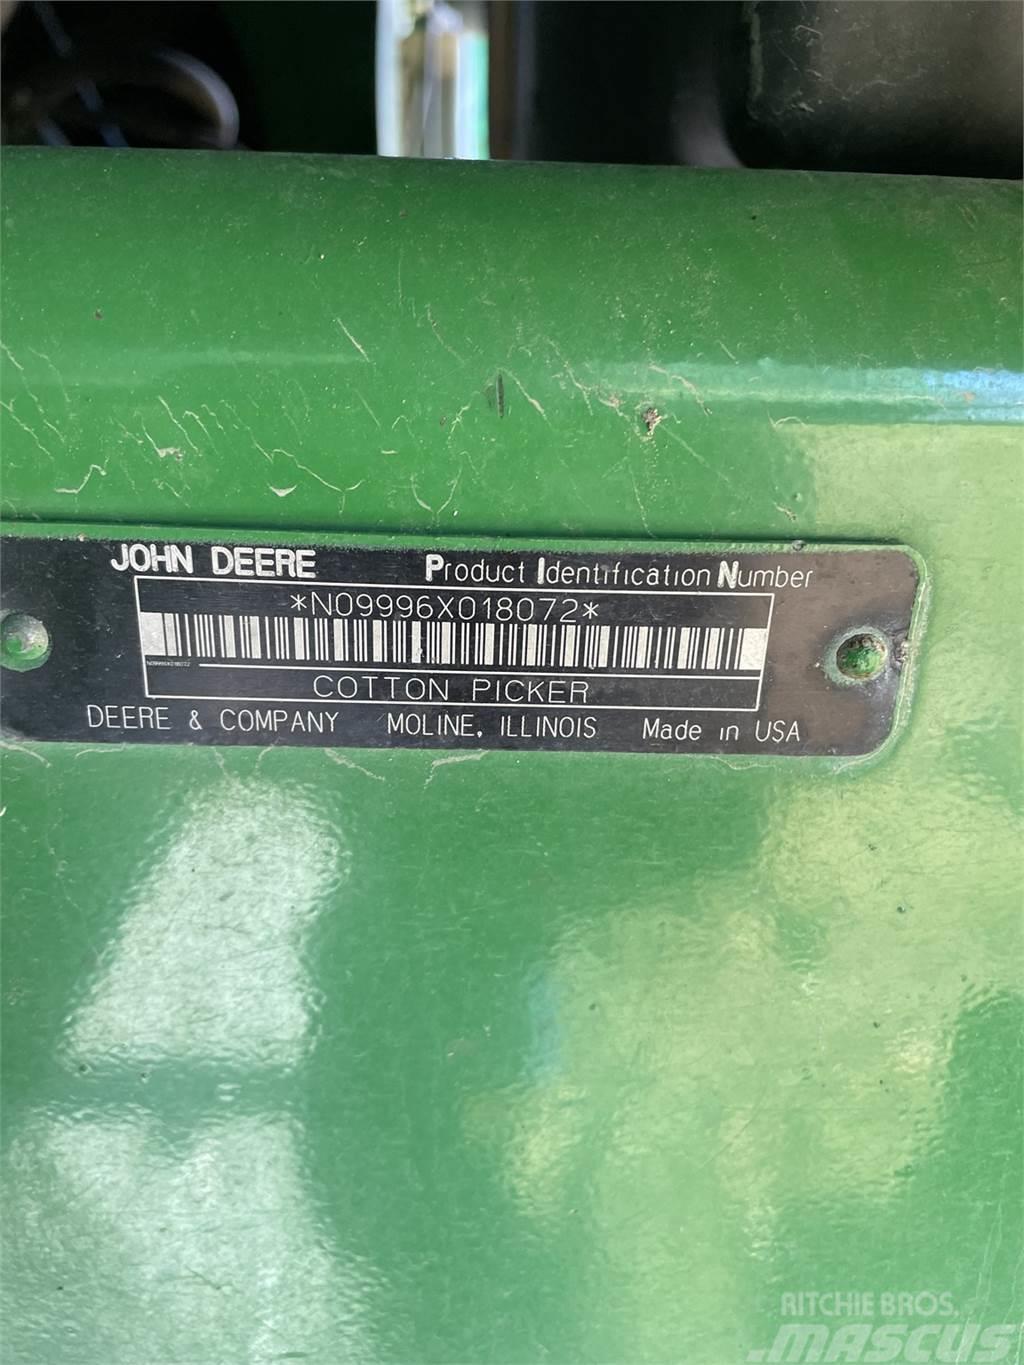 John Deere 9996 Kiti derliaus nuėmimo įrengimai